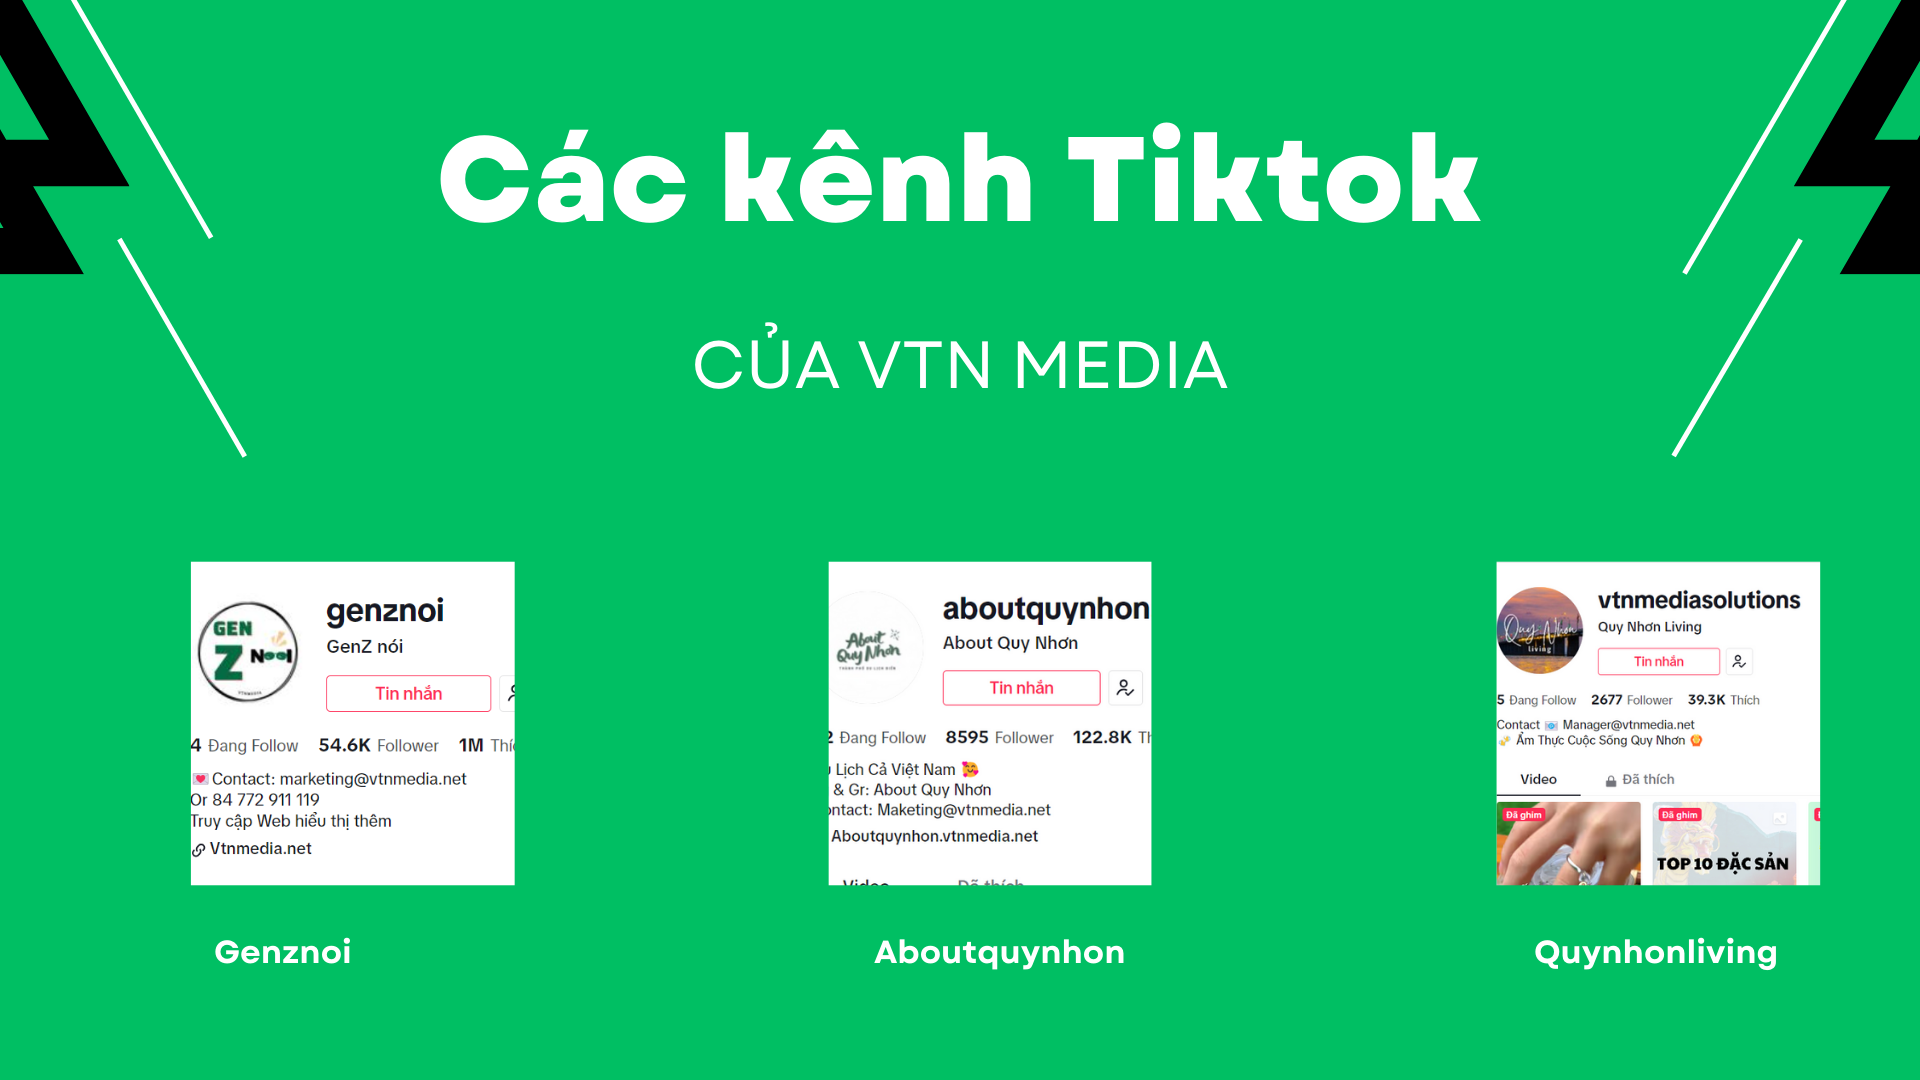 Cac-kenh-tiktok-cua-VTN-Media